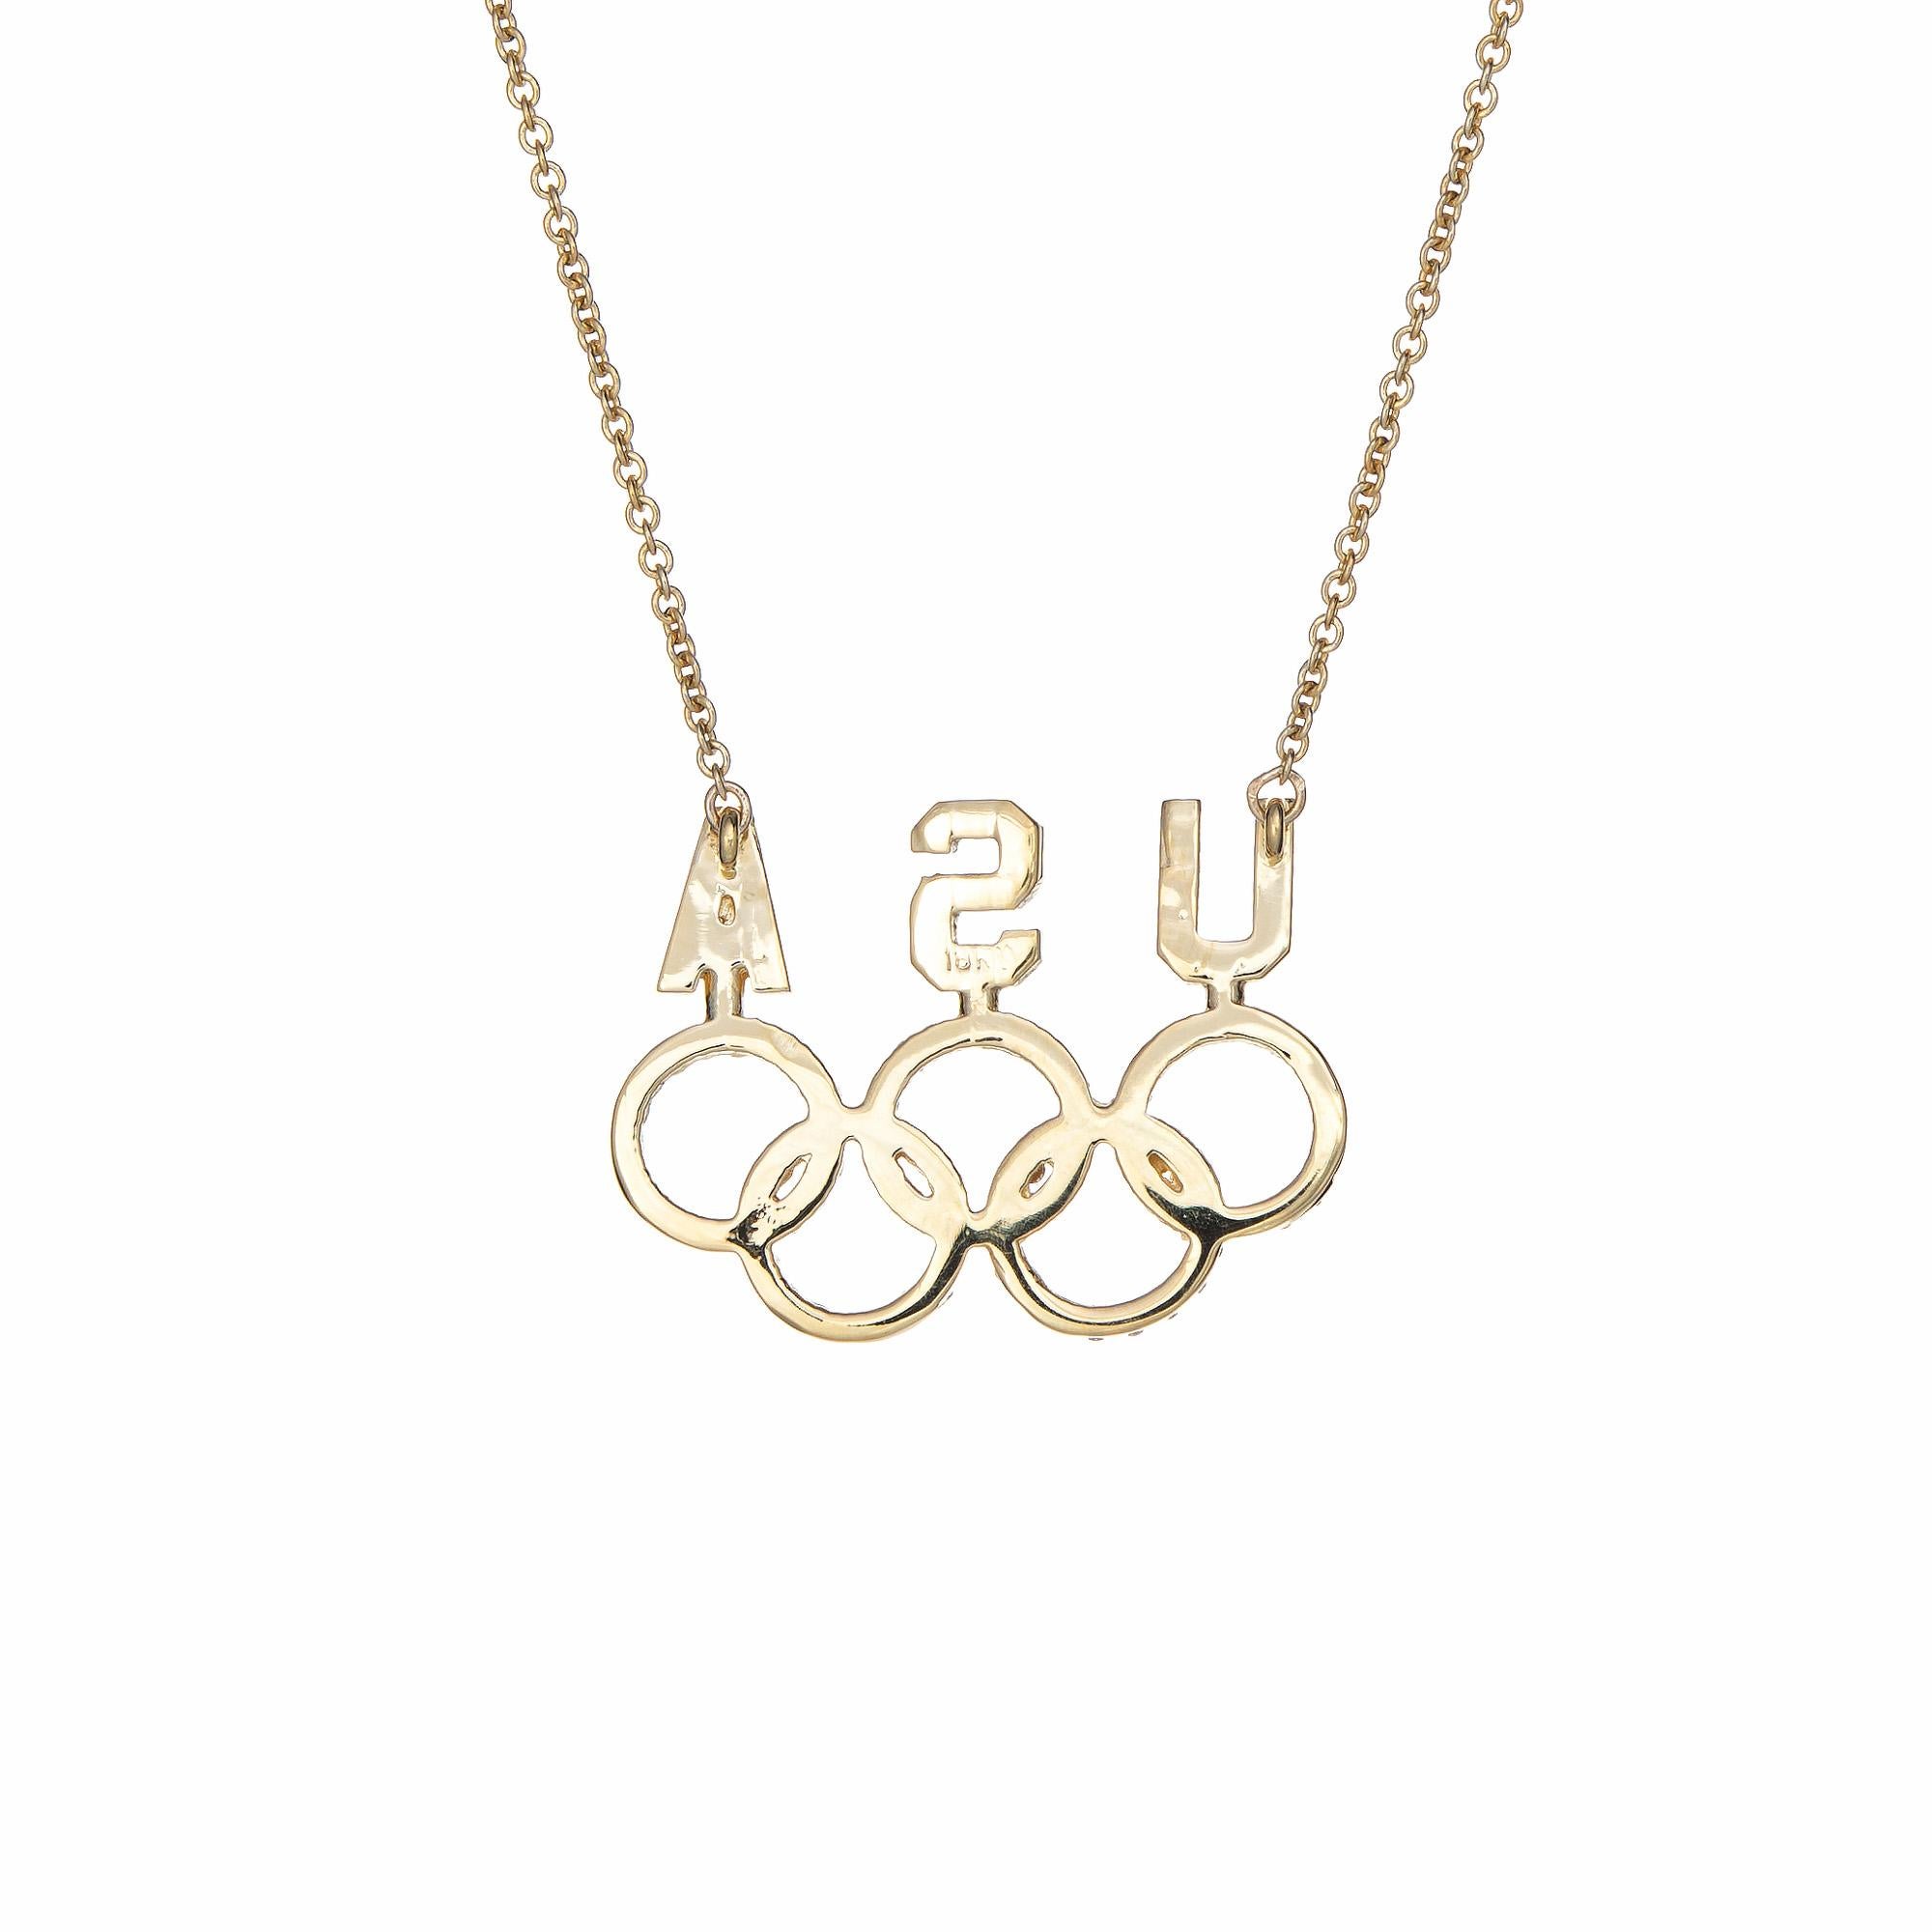 Collier USA élégant et finement détaillé avec des diamants sertis dans les anneaux olympiques. Le pendentif est en or jaune 18k et la chaîne est en or jaune 14k.  

Le total des diamants est estimé à 0,60 carats (couleur G-H et pureté VS2-SI2). 

Le